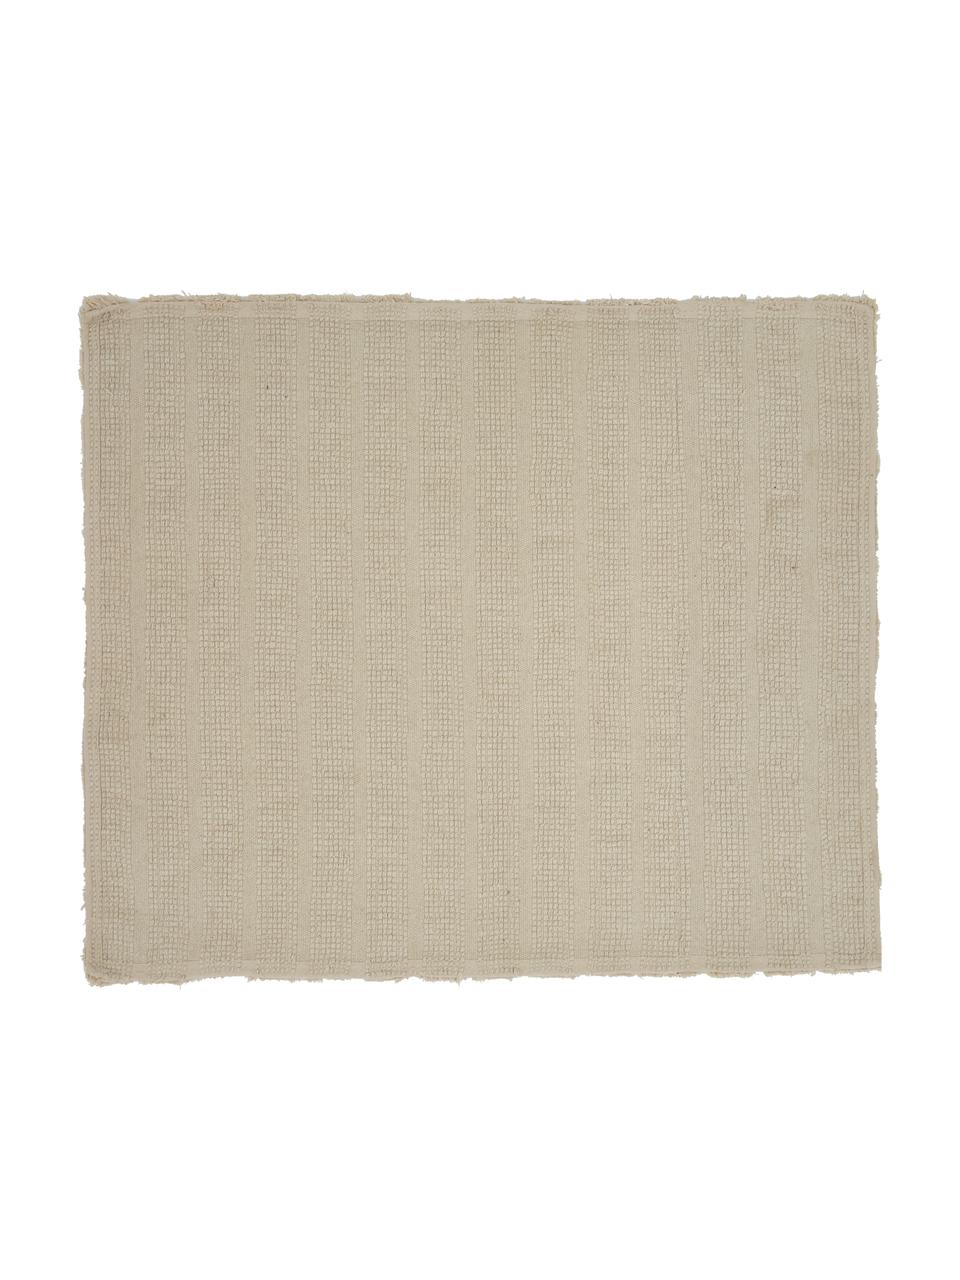 Flauschiger Badvorleger Board in Beige, 100% Baumwolle
Schwere Qualität, 1900 g/m², Beige, B 50 x L 60 cm